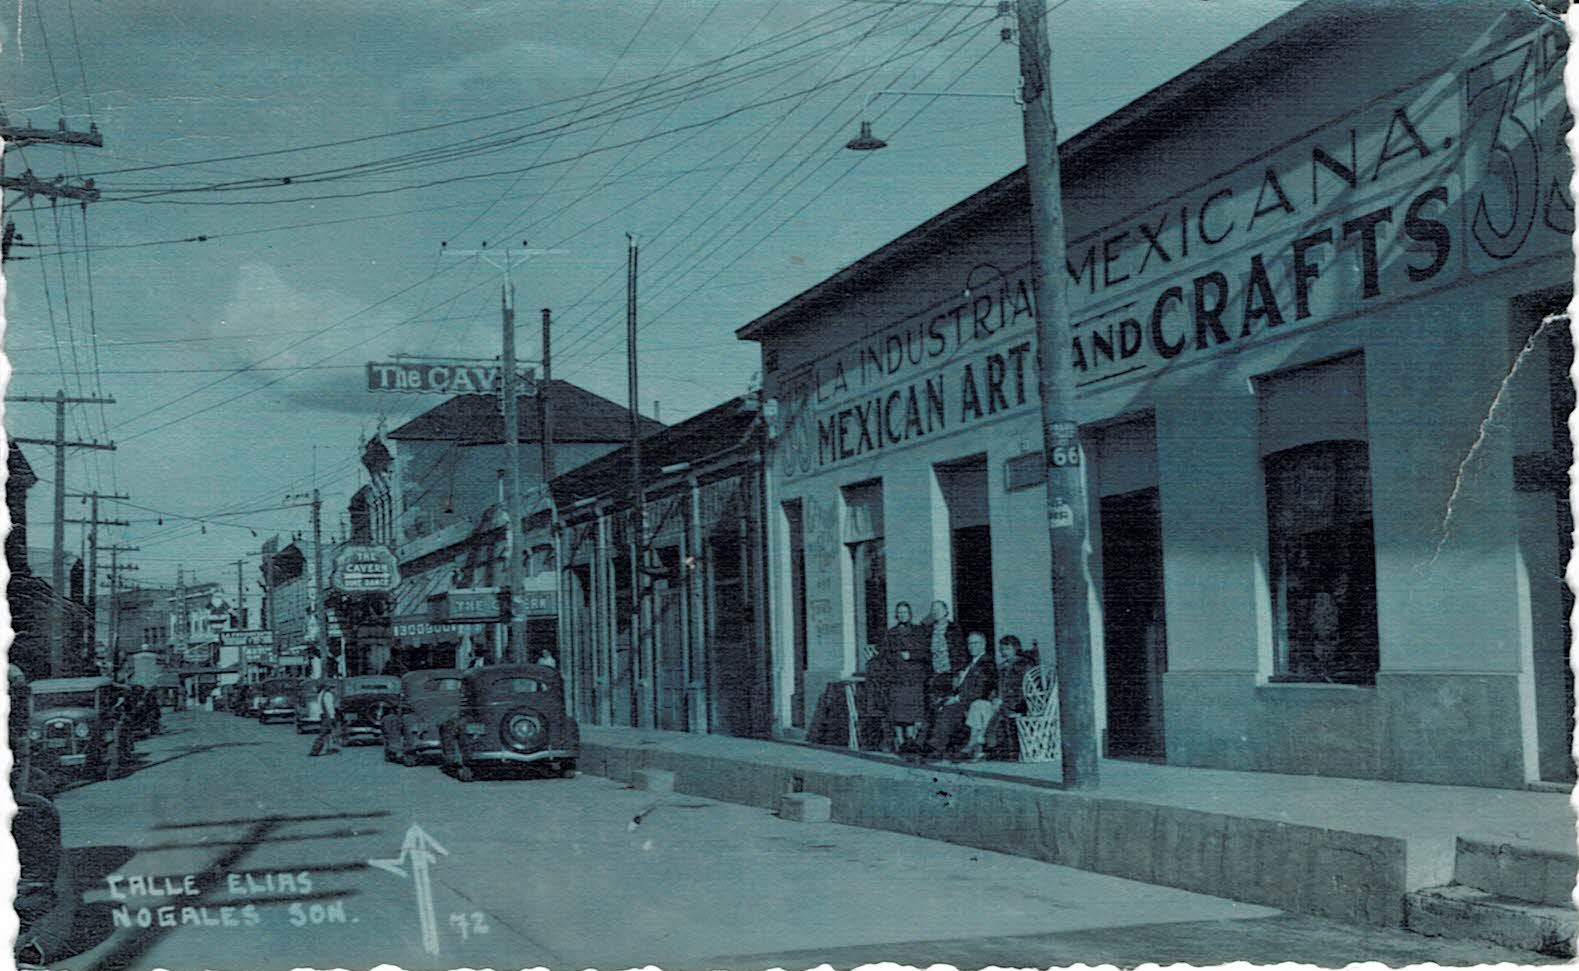 Nogales Sonora Postcard 1945